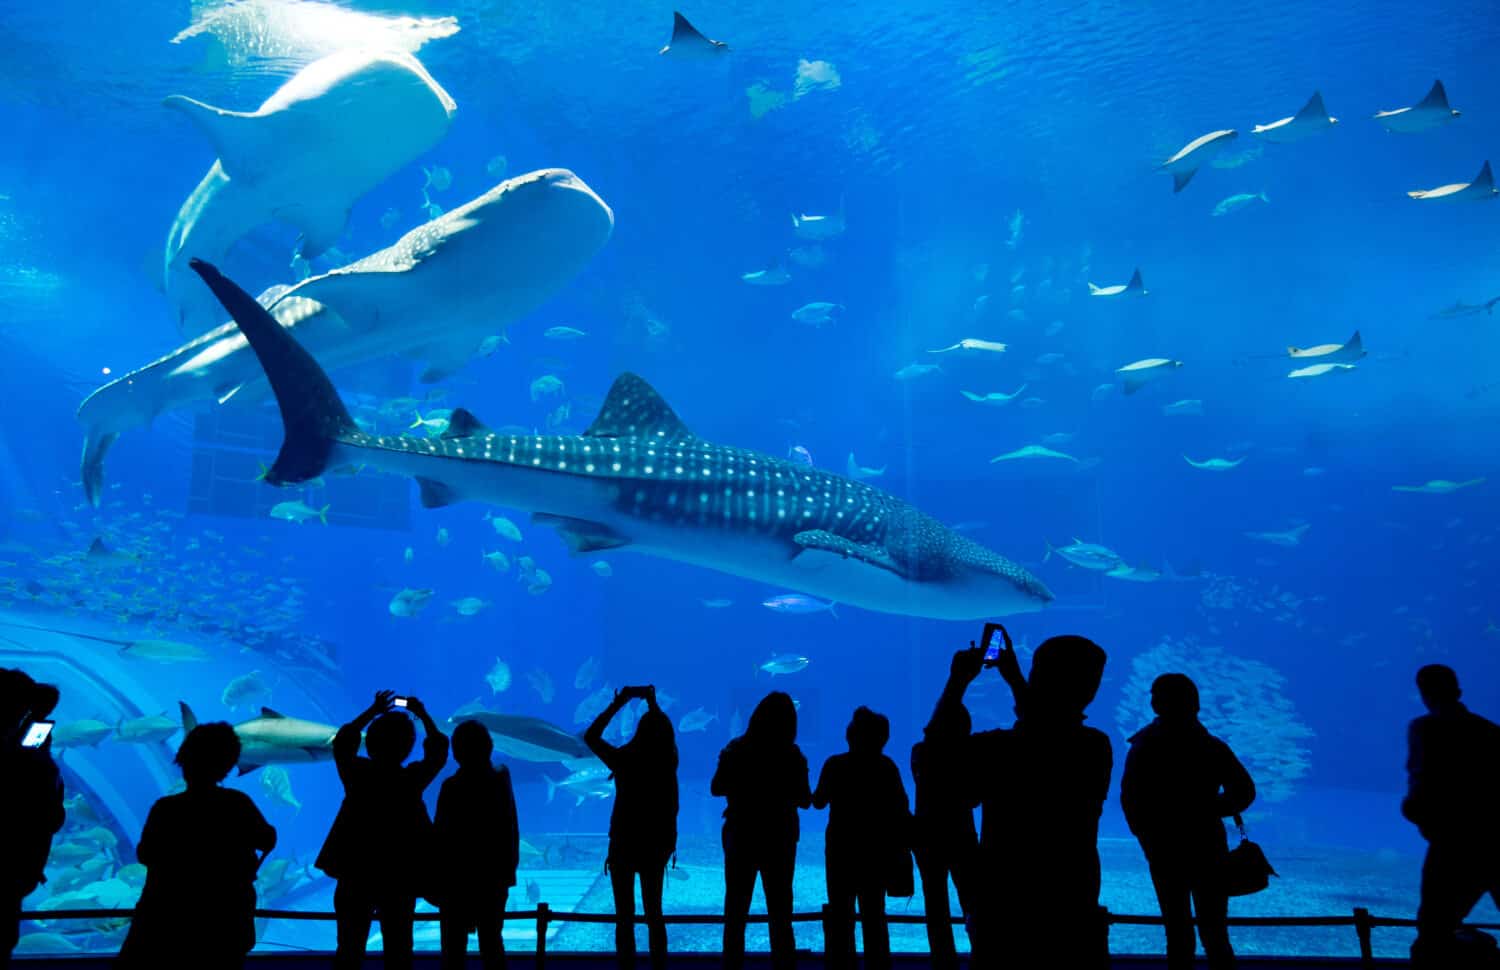 People observing fish at the aquarium